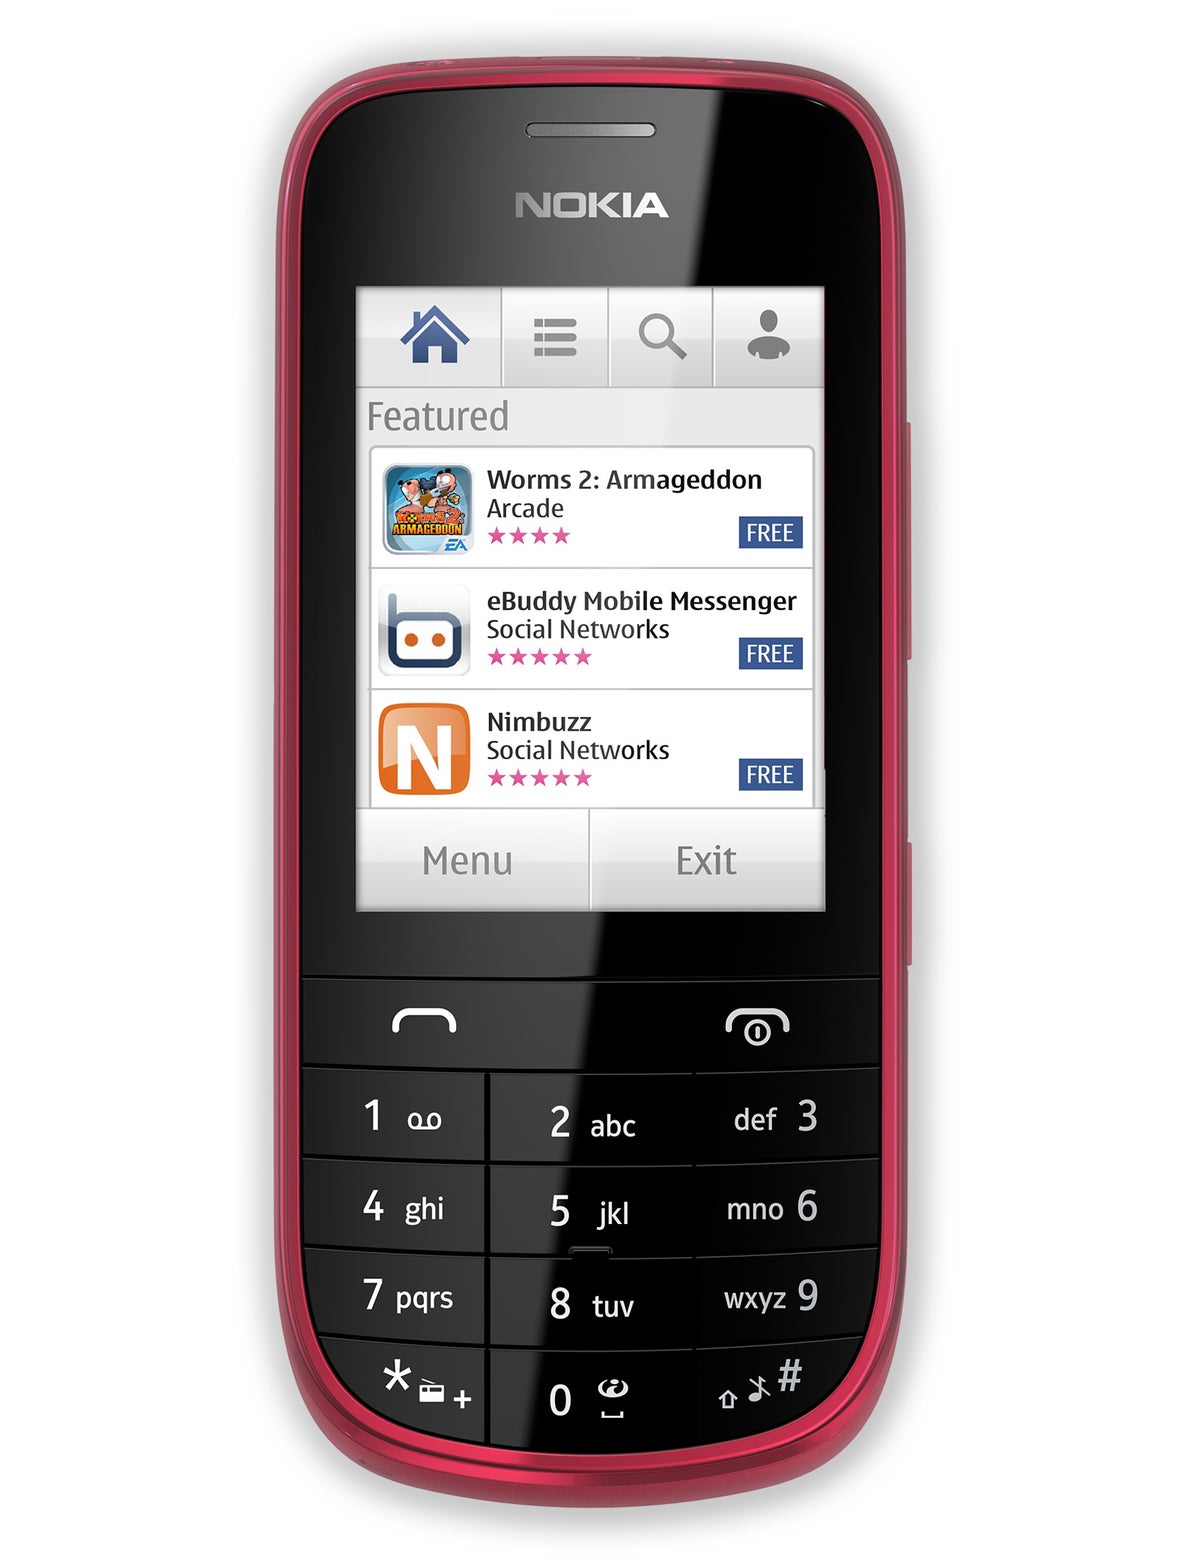 Nokia Life ahora en Lumia 900 y Asha 202